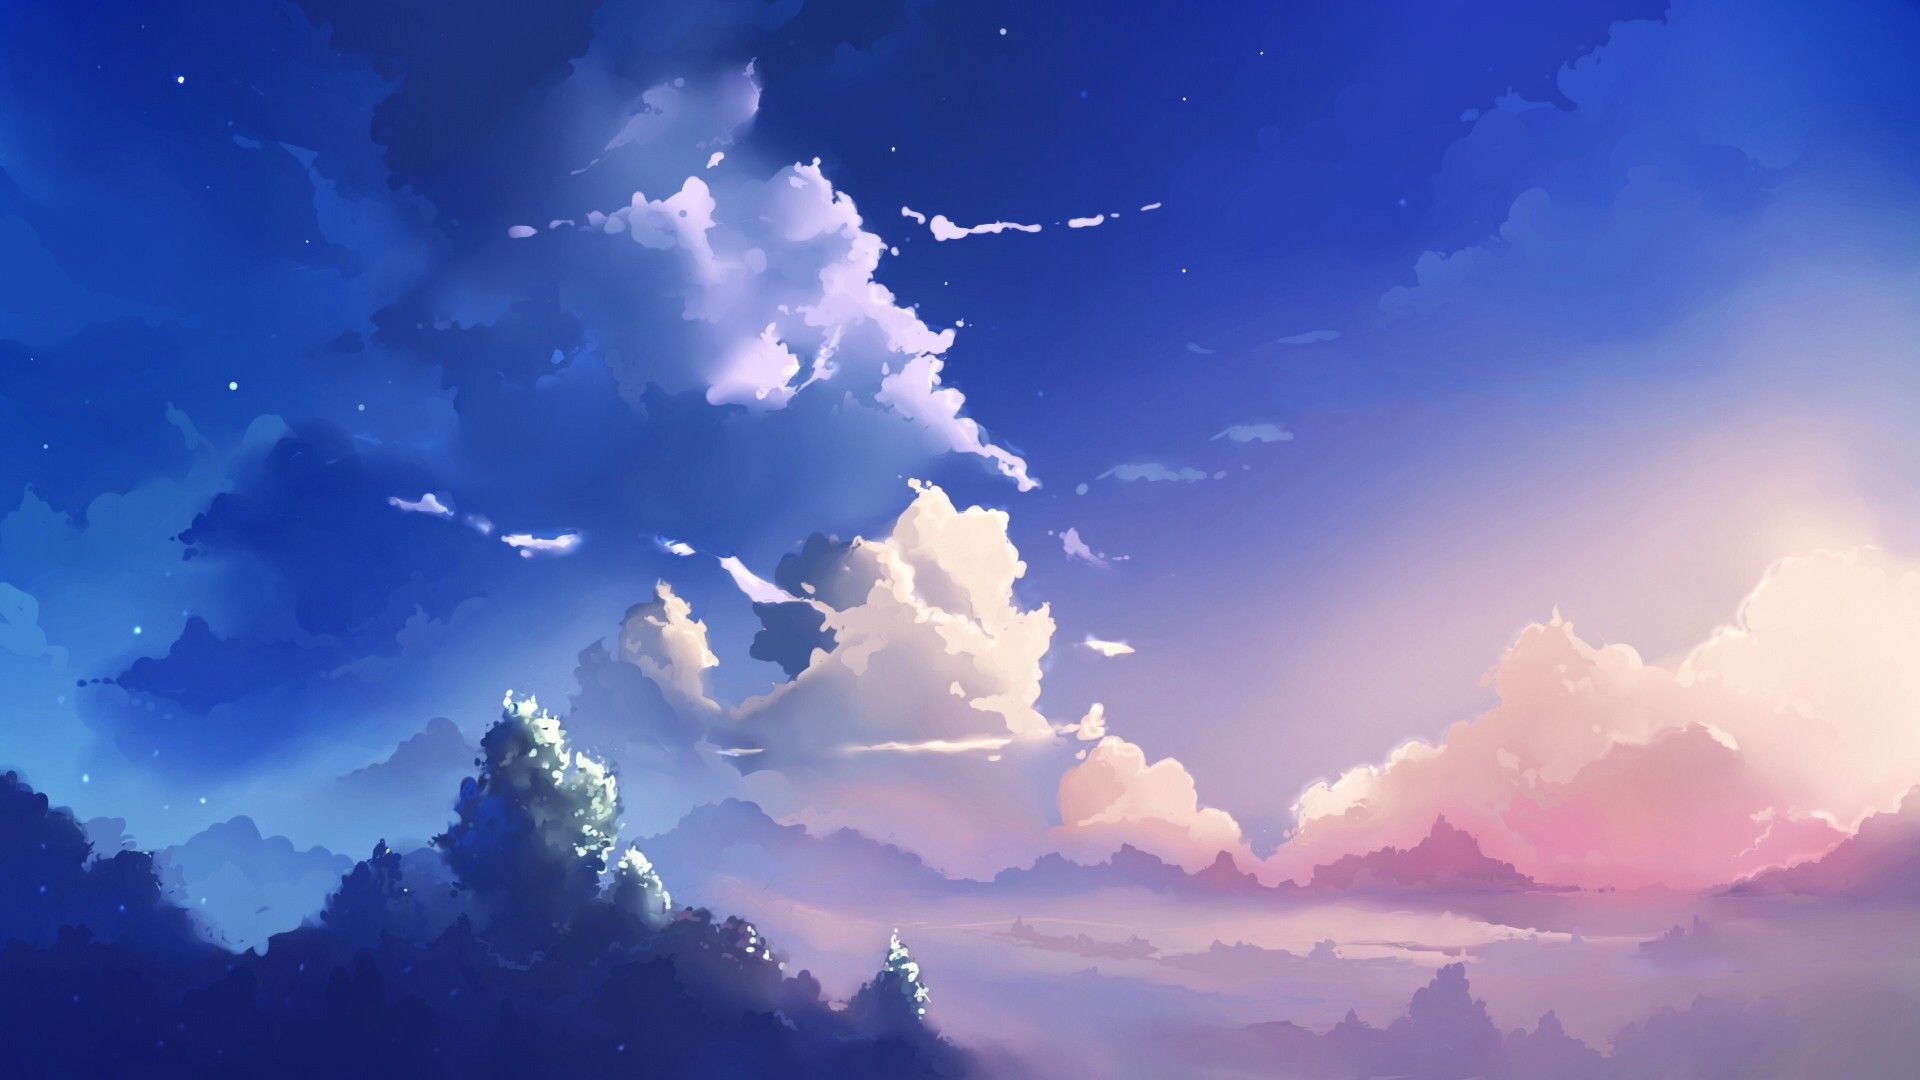 Lập tức cập nhật cho điện thoại những hình nền Anime đám mây đầy lãng mạn từ Wallpaper Cave này nhé! Những hình ảnh mây xanh, xôi thịt, kết hợp với thế giới anime đầy màu sắc sẽ là một bước đệm tuyệt vời cho bạn phóng tầm nhìn, tìm thấy niềm vui và sự thoải mái. Đến với chúng tôi và tận hưởng những giây phút thật tuyệt vời bạn nhé!